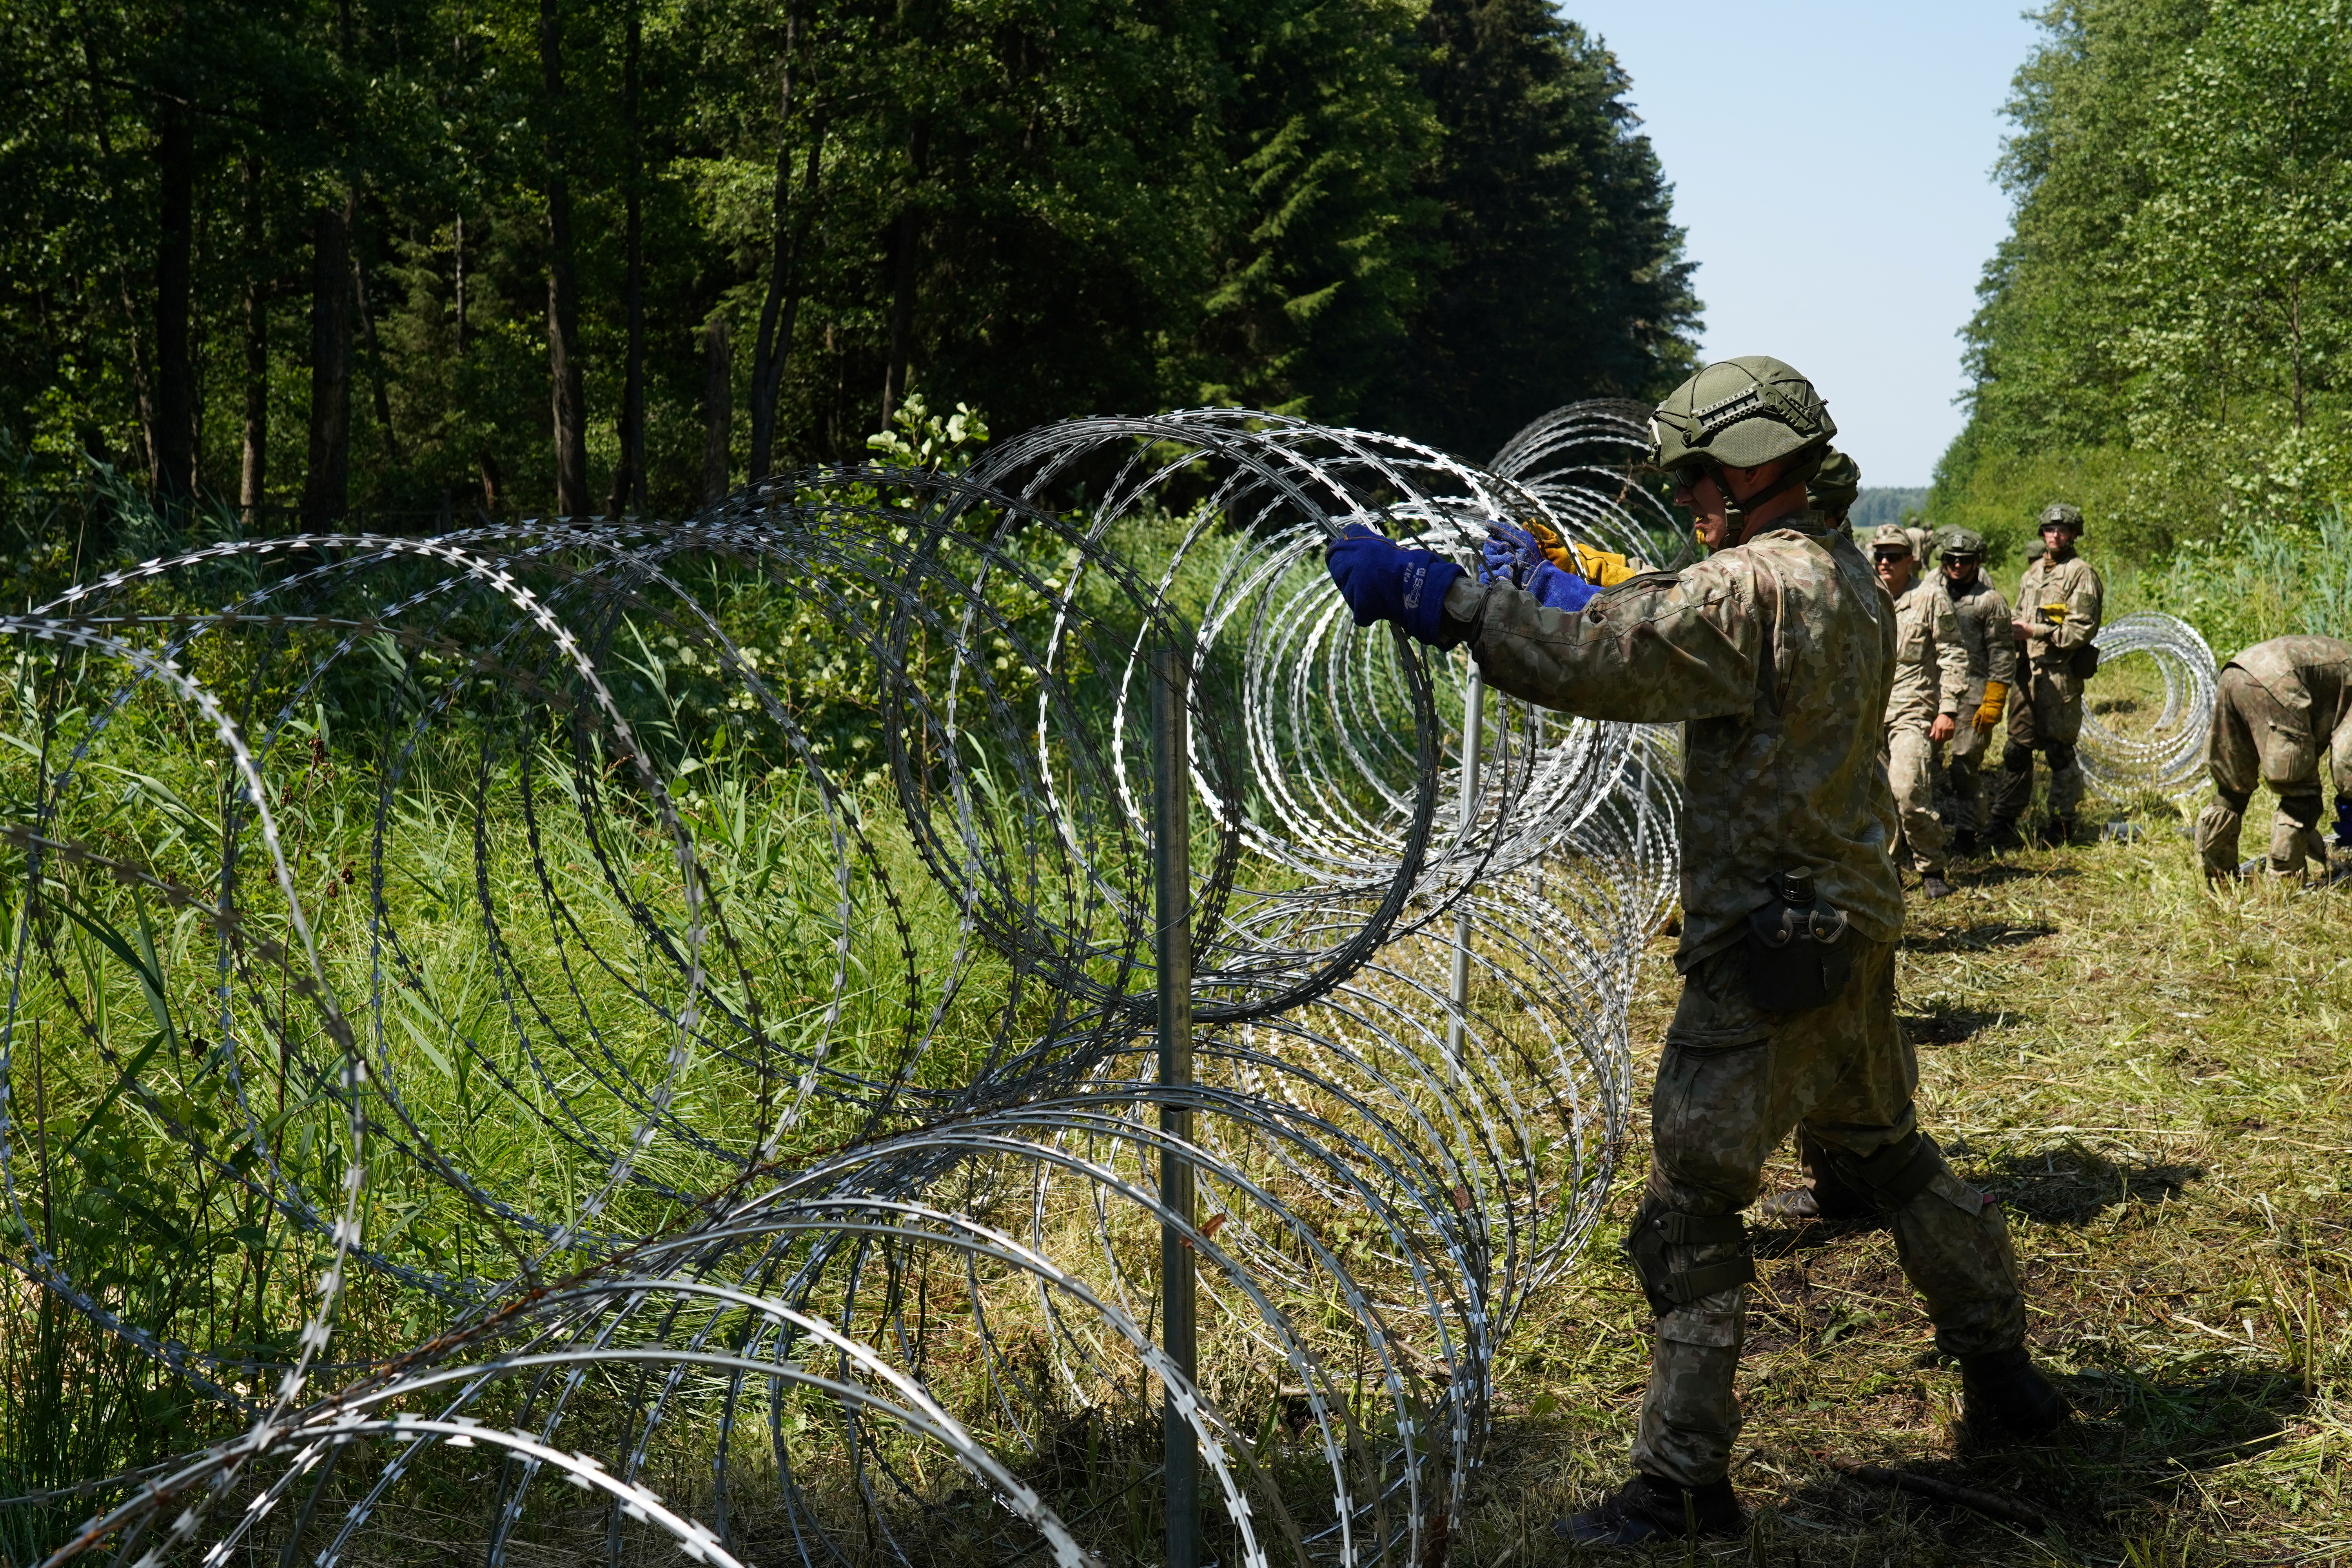 लिथुआनियाई सेना के सैनिकों ने 9 जुलाई, 2021 को ड्रुस्किनकै, लिथुआनिया में बेलारूस के साथ सीमा पर उस्तरा तार स्थापित किया। रॉयटर्स/जेनिस लाइज़न्स